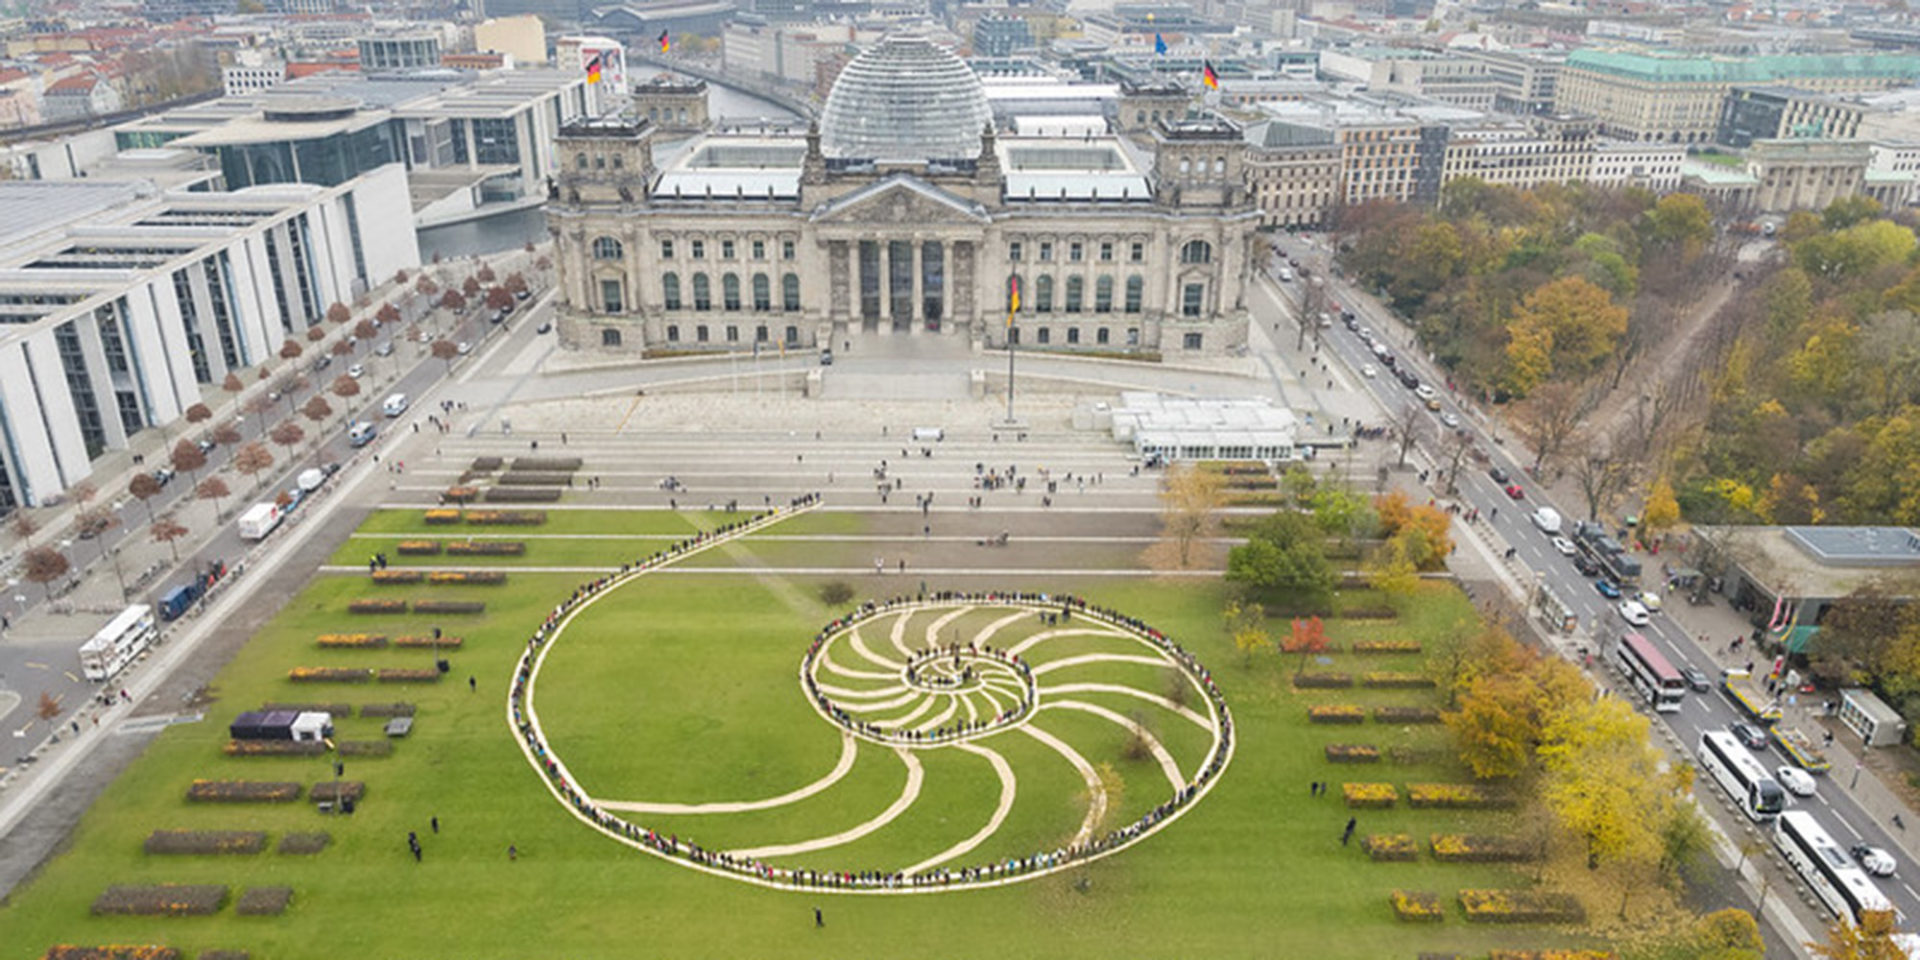 Die Luftaufnahme zeigt den Reichstag in Berlin mit der davor liegenden Wiese, auf dieser ist der Schriftzug "Democracy for Future" zu lesen.